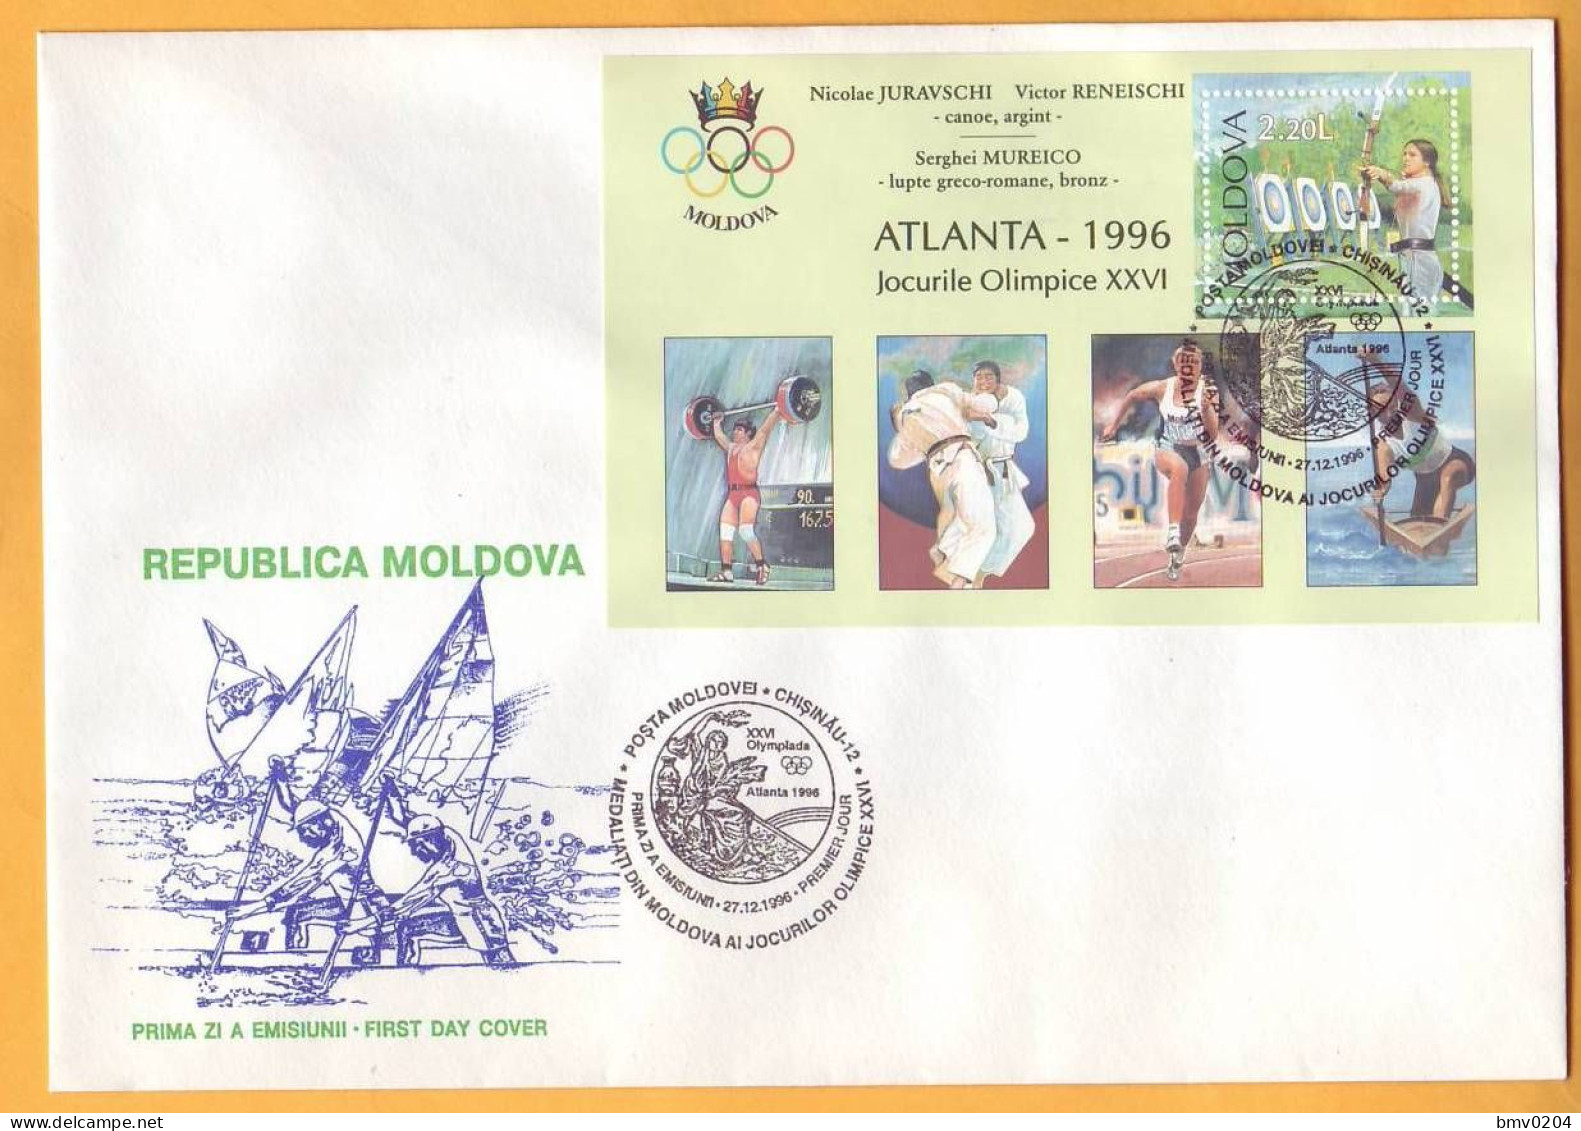 1996  Moldova Moldavie Moldau  FDC Olympic Medalist. Atlanta. - Moldova